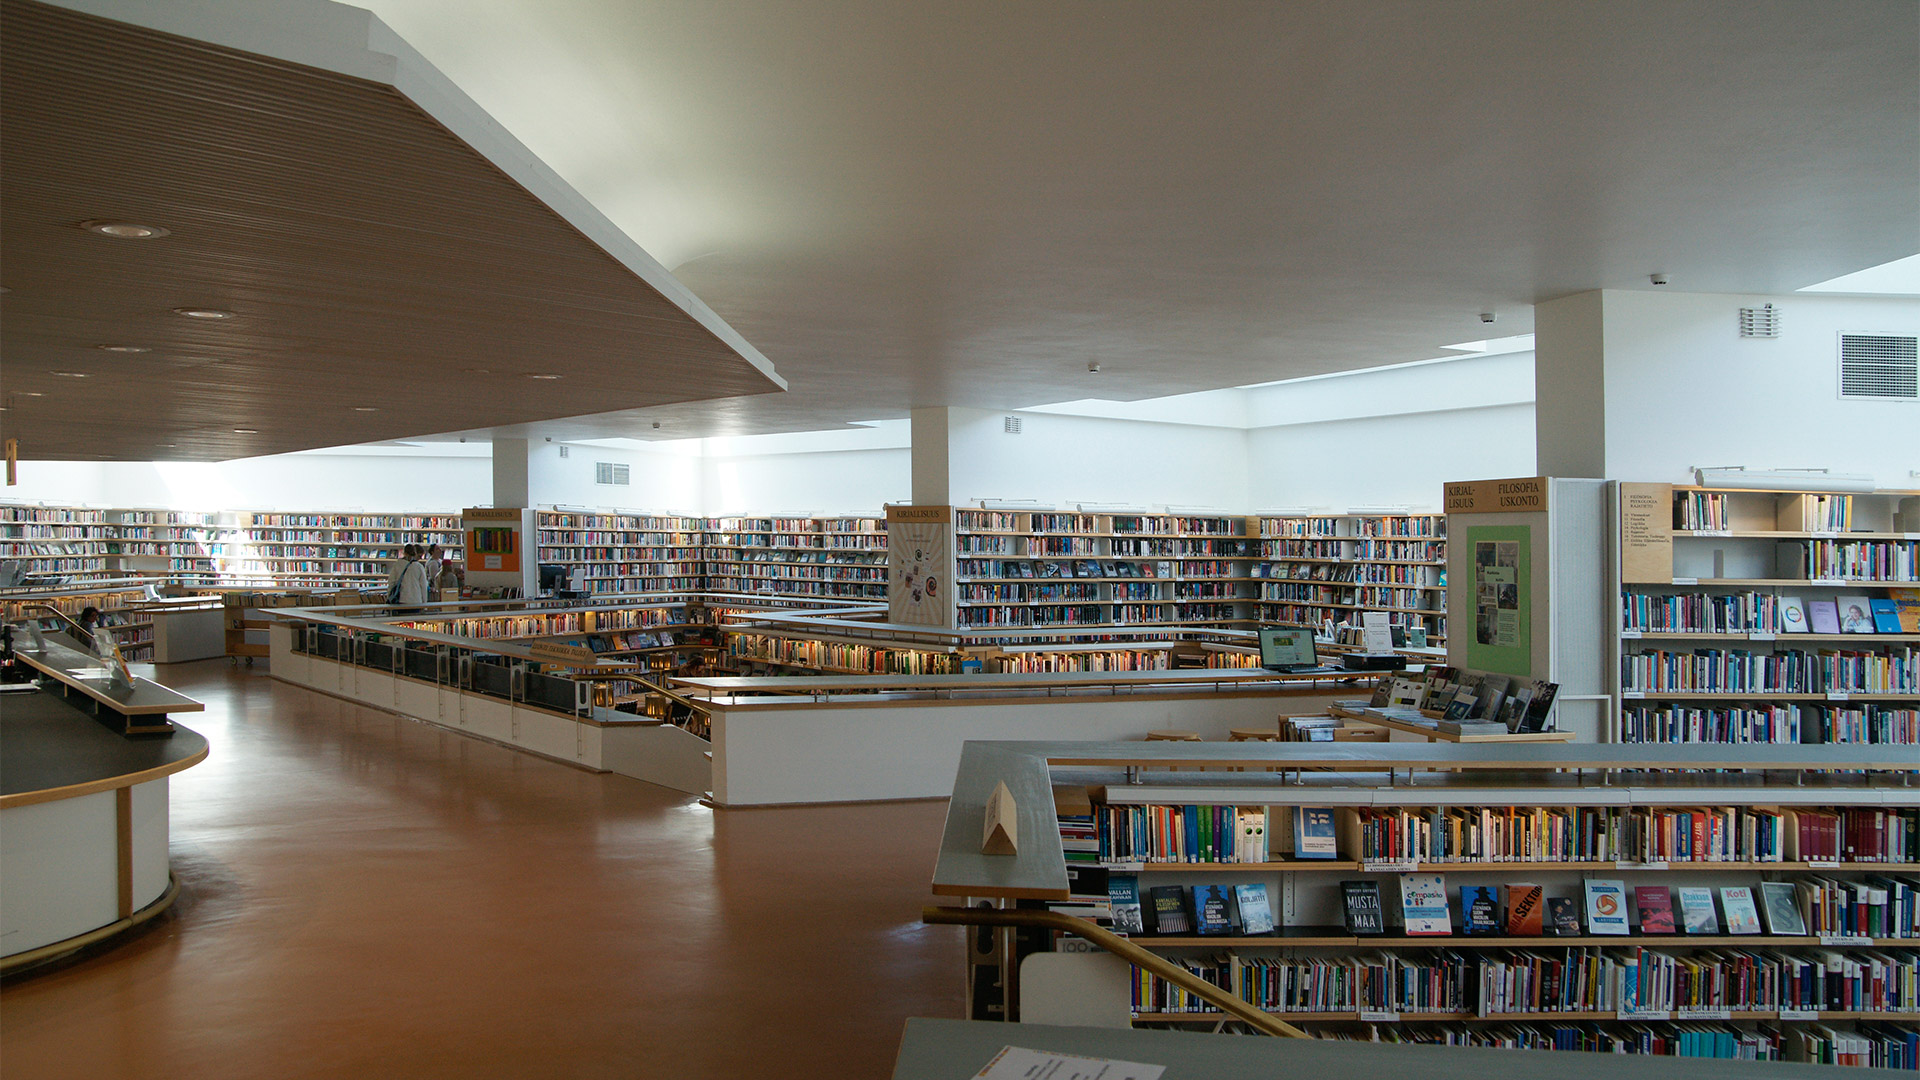 邁向有機空間 建築與城市 阿爾瓦 阿爾托的圖書館建築在1960年代的突破 實構築 季刊 打造一個台灣的國際建築平台